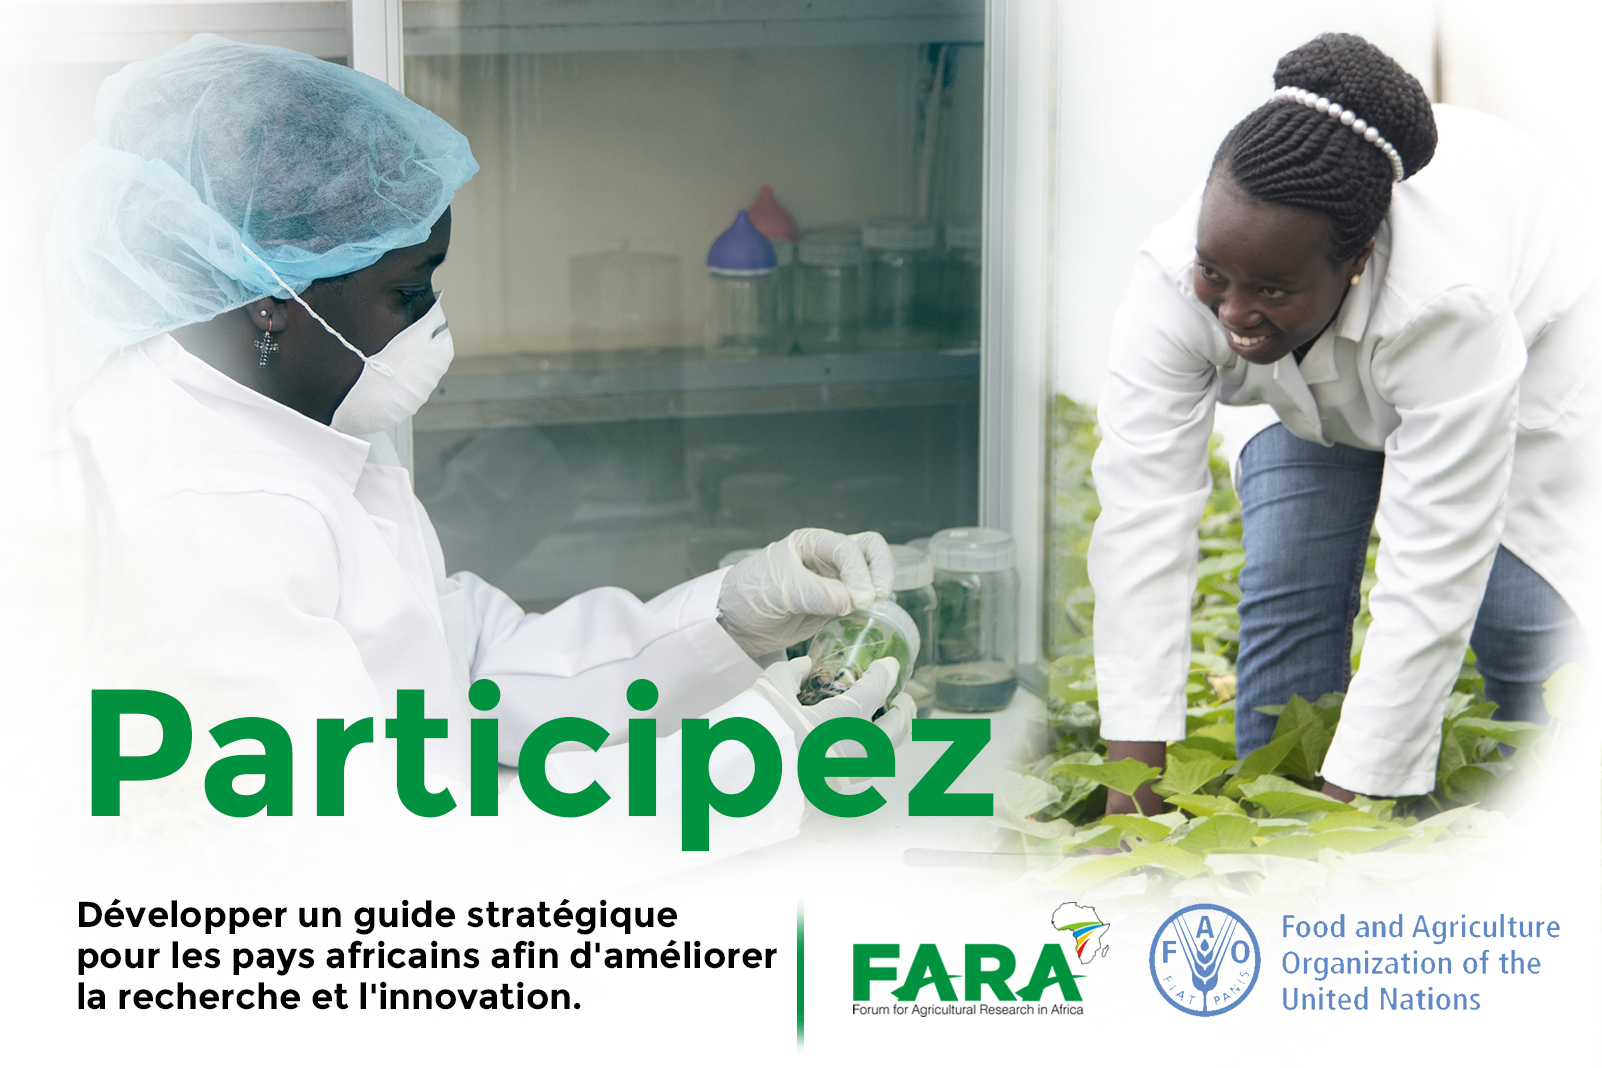 Le FARA est prêt à apporter son appui à la FAO dans le cadre de l’élaboration d’un guide stratégique permettant aux pays d’améliorer la recherche et l’innovation